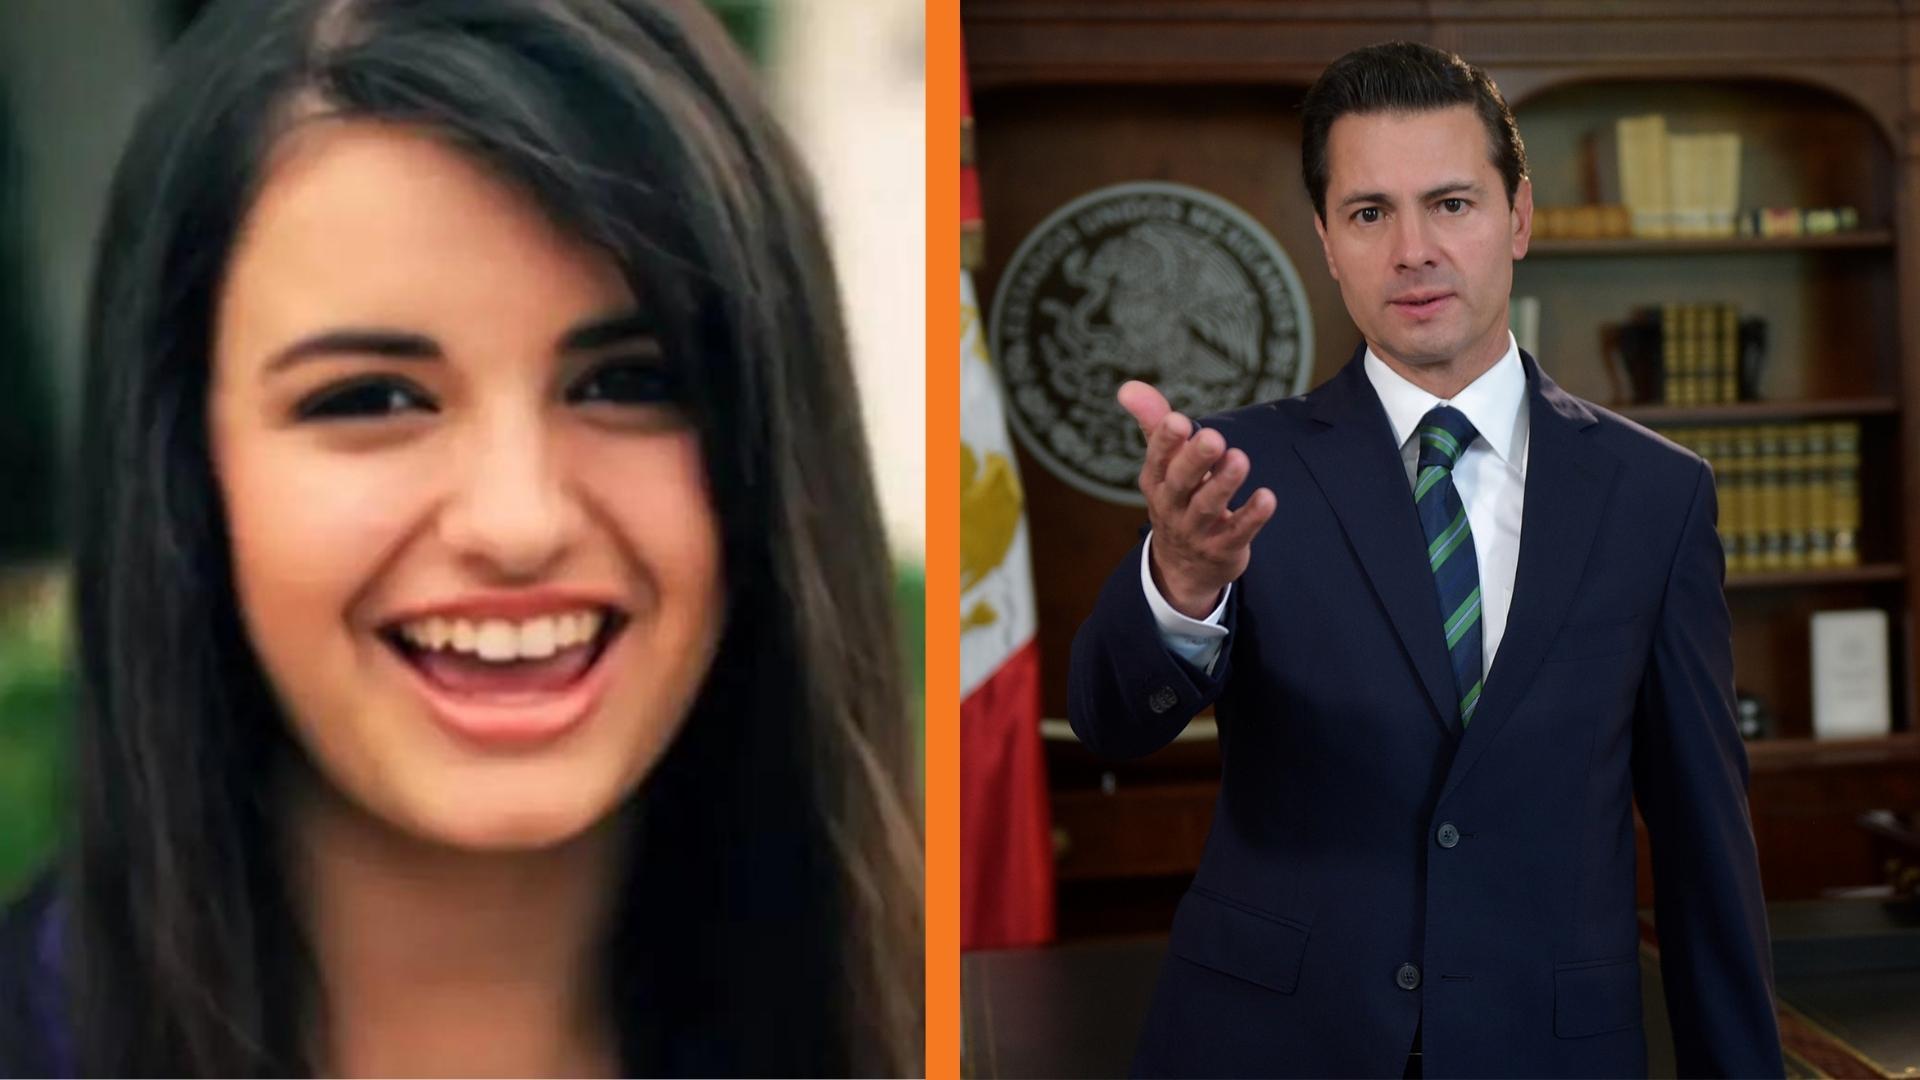 Rebecca Black revela en TikTok que fue ‘estafada’ a los 14 años para apoyar a Peña Nieto. Noticias en tiempo real